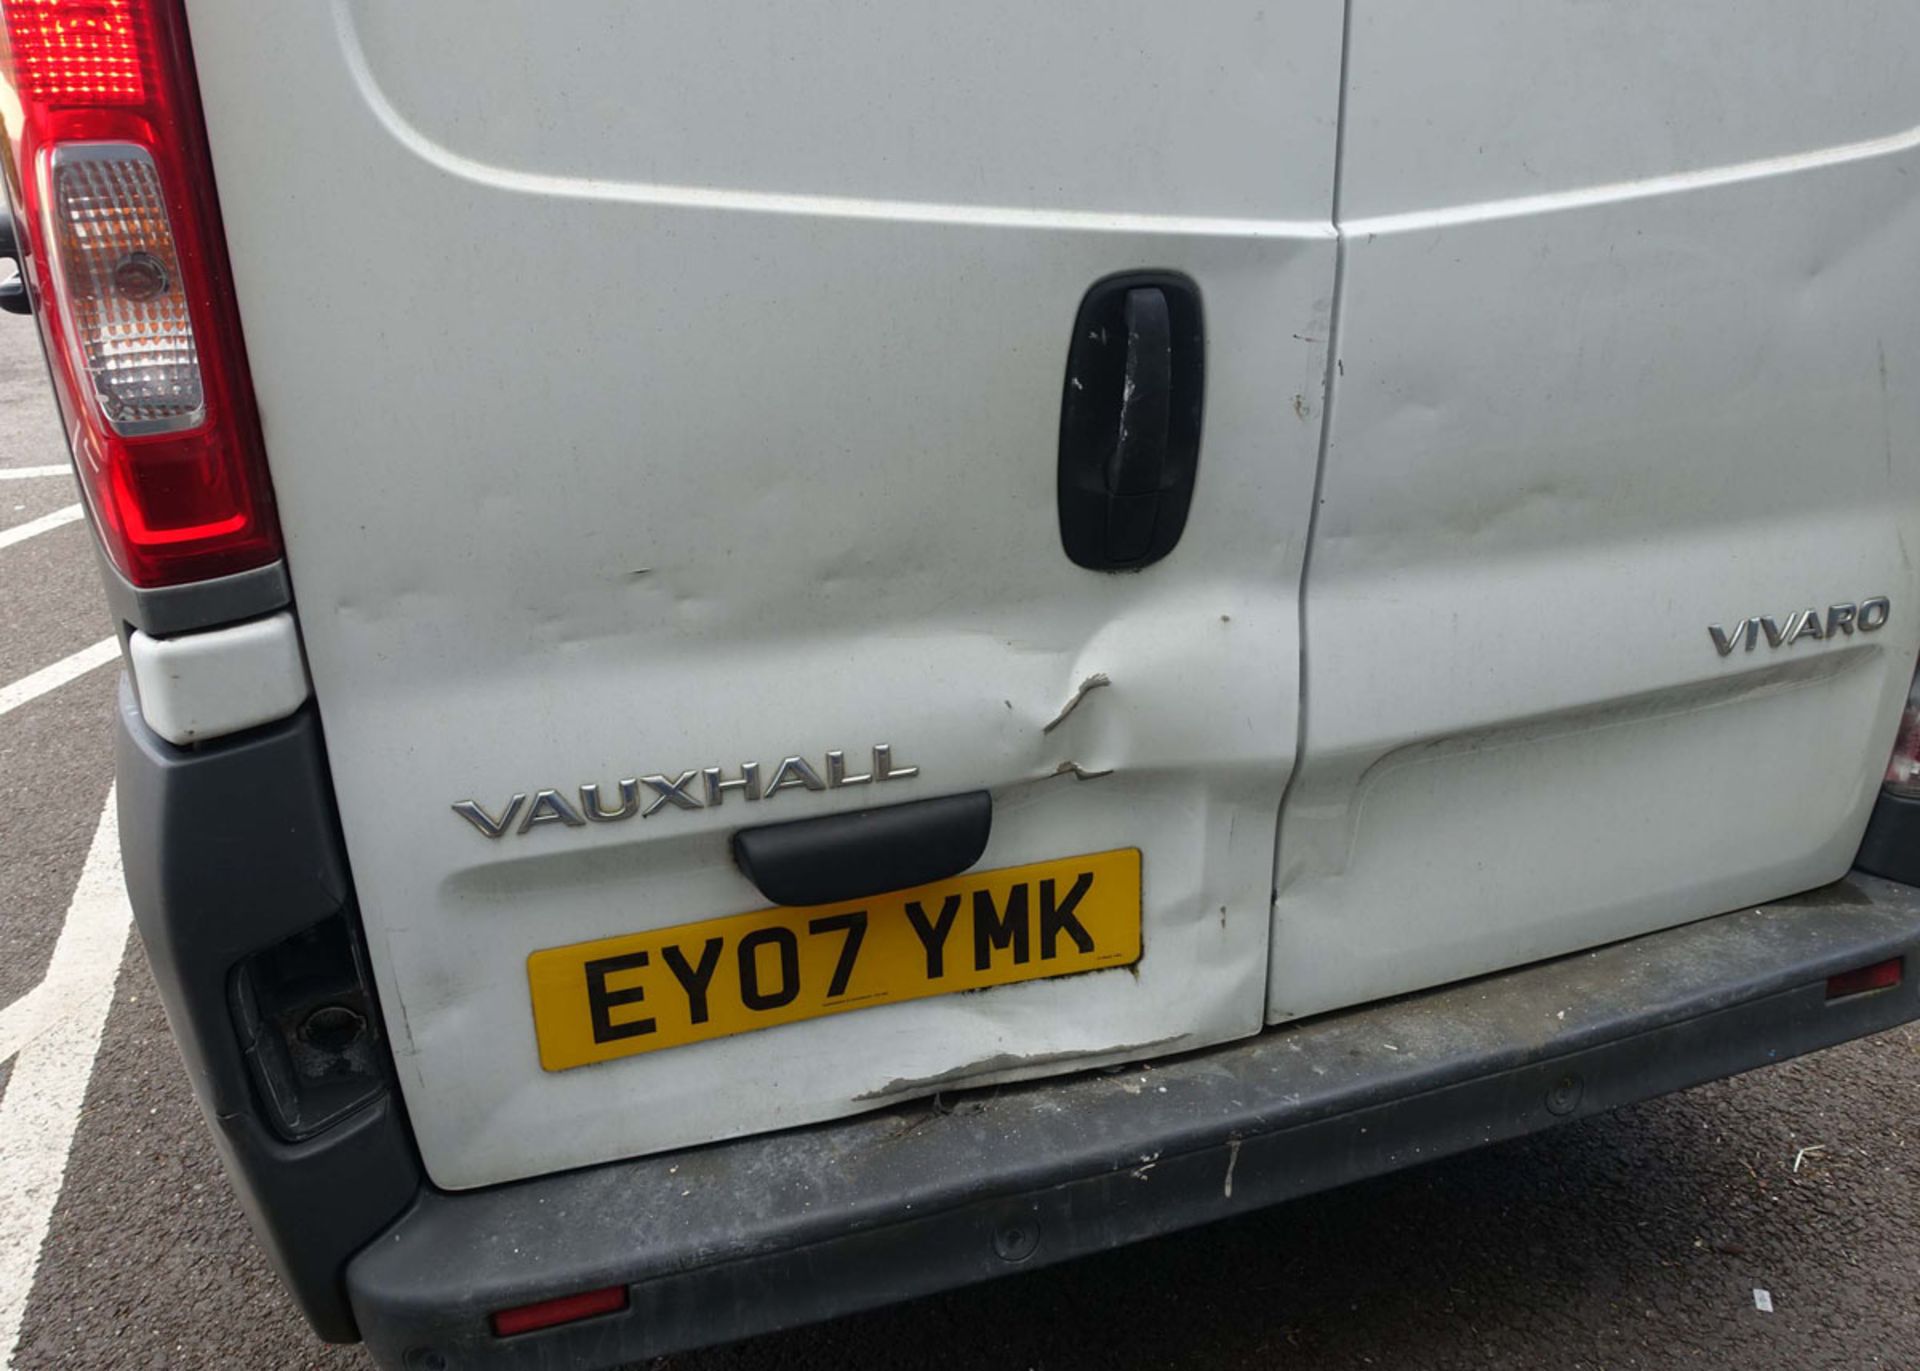 EY07 YMK (2007) Vauxhall Vivaro van, diesel in white MOT: None - Image 5 of 11